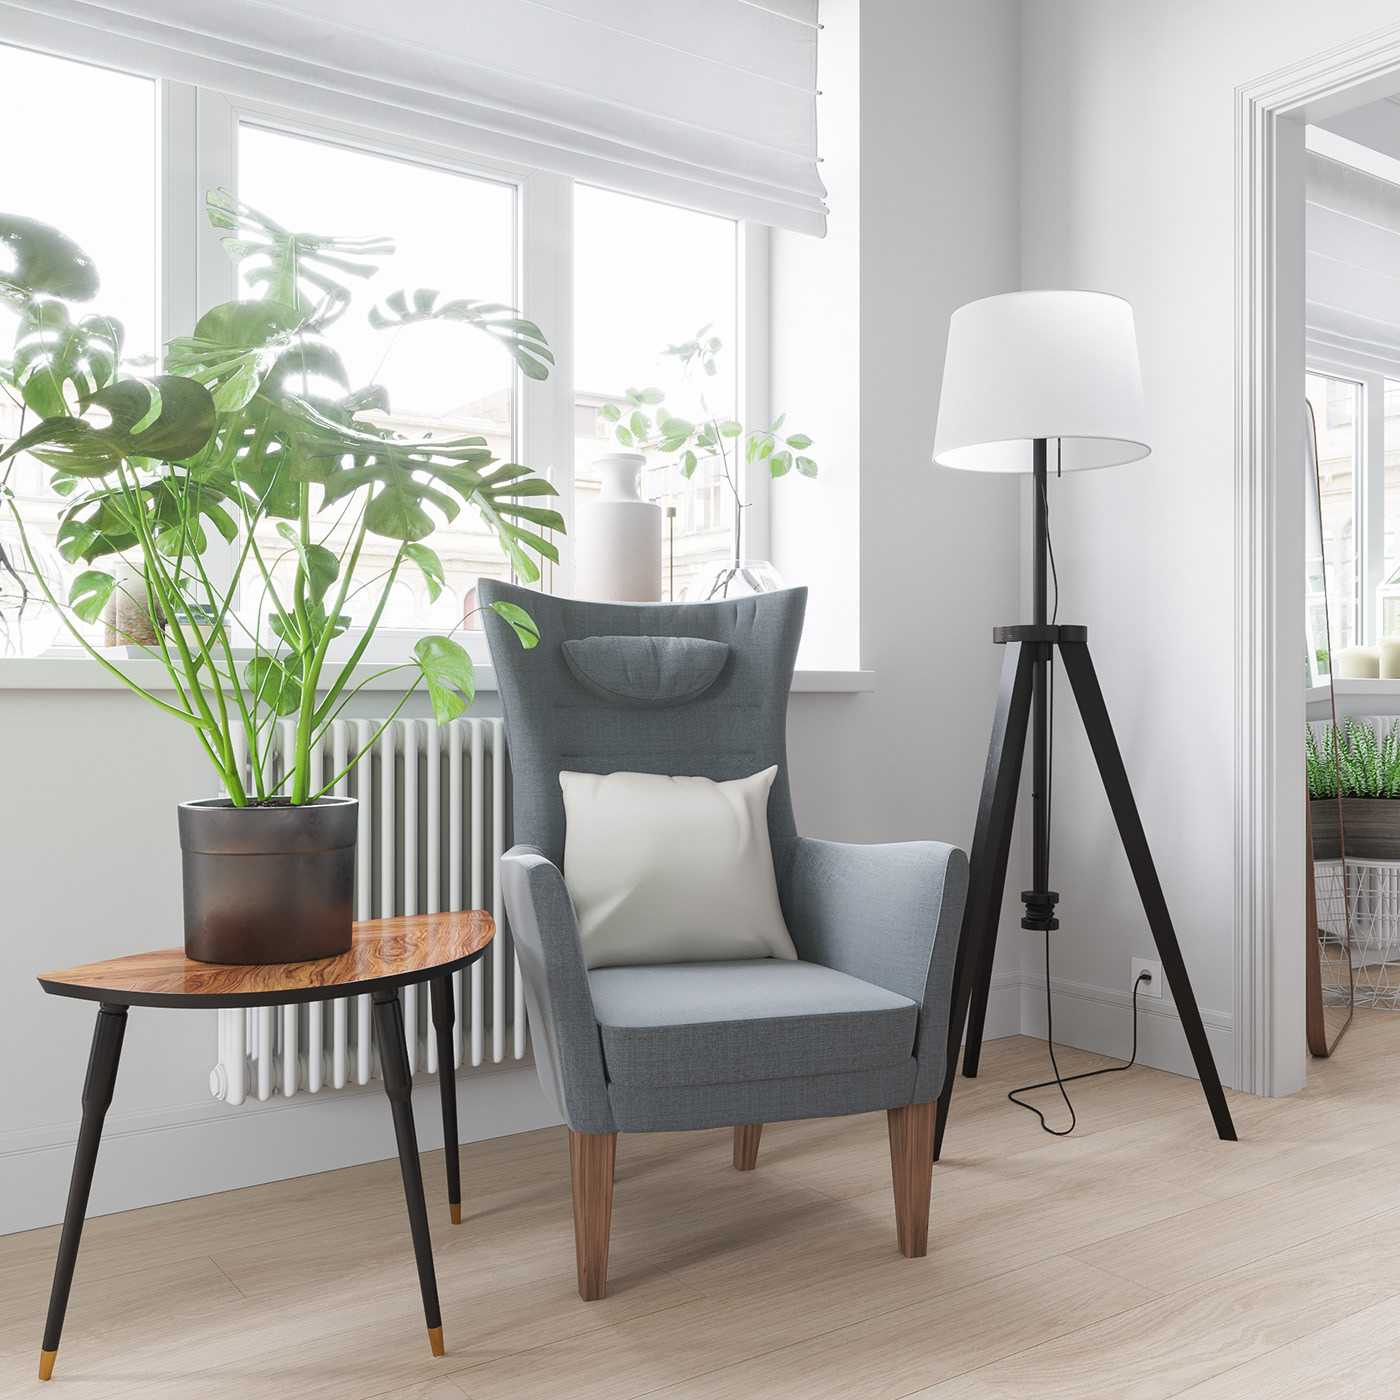 北欧简约风格公寓装修沙发椅设计图